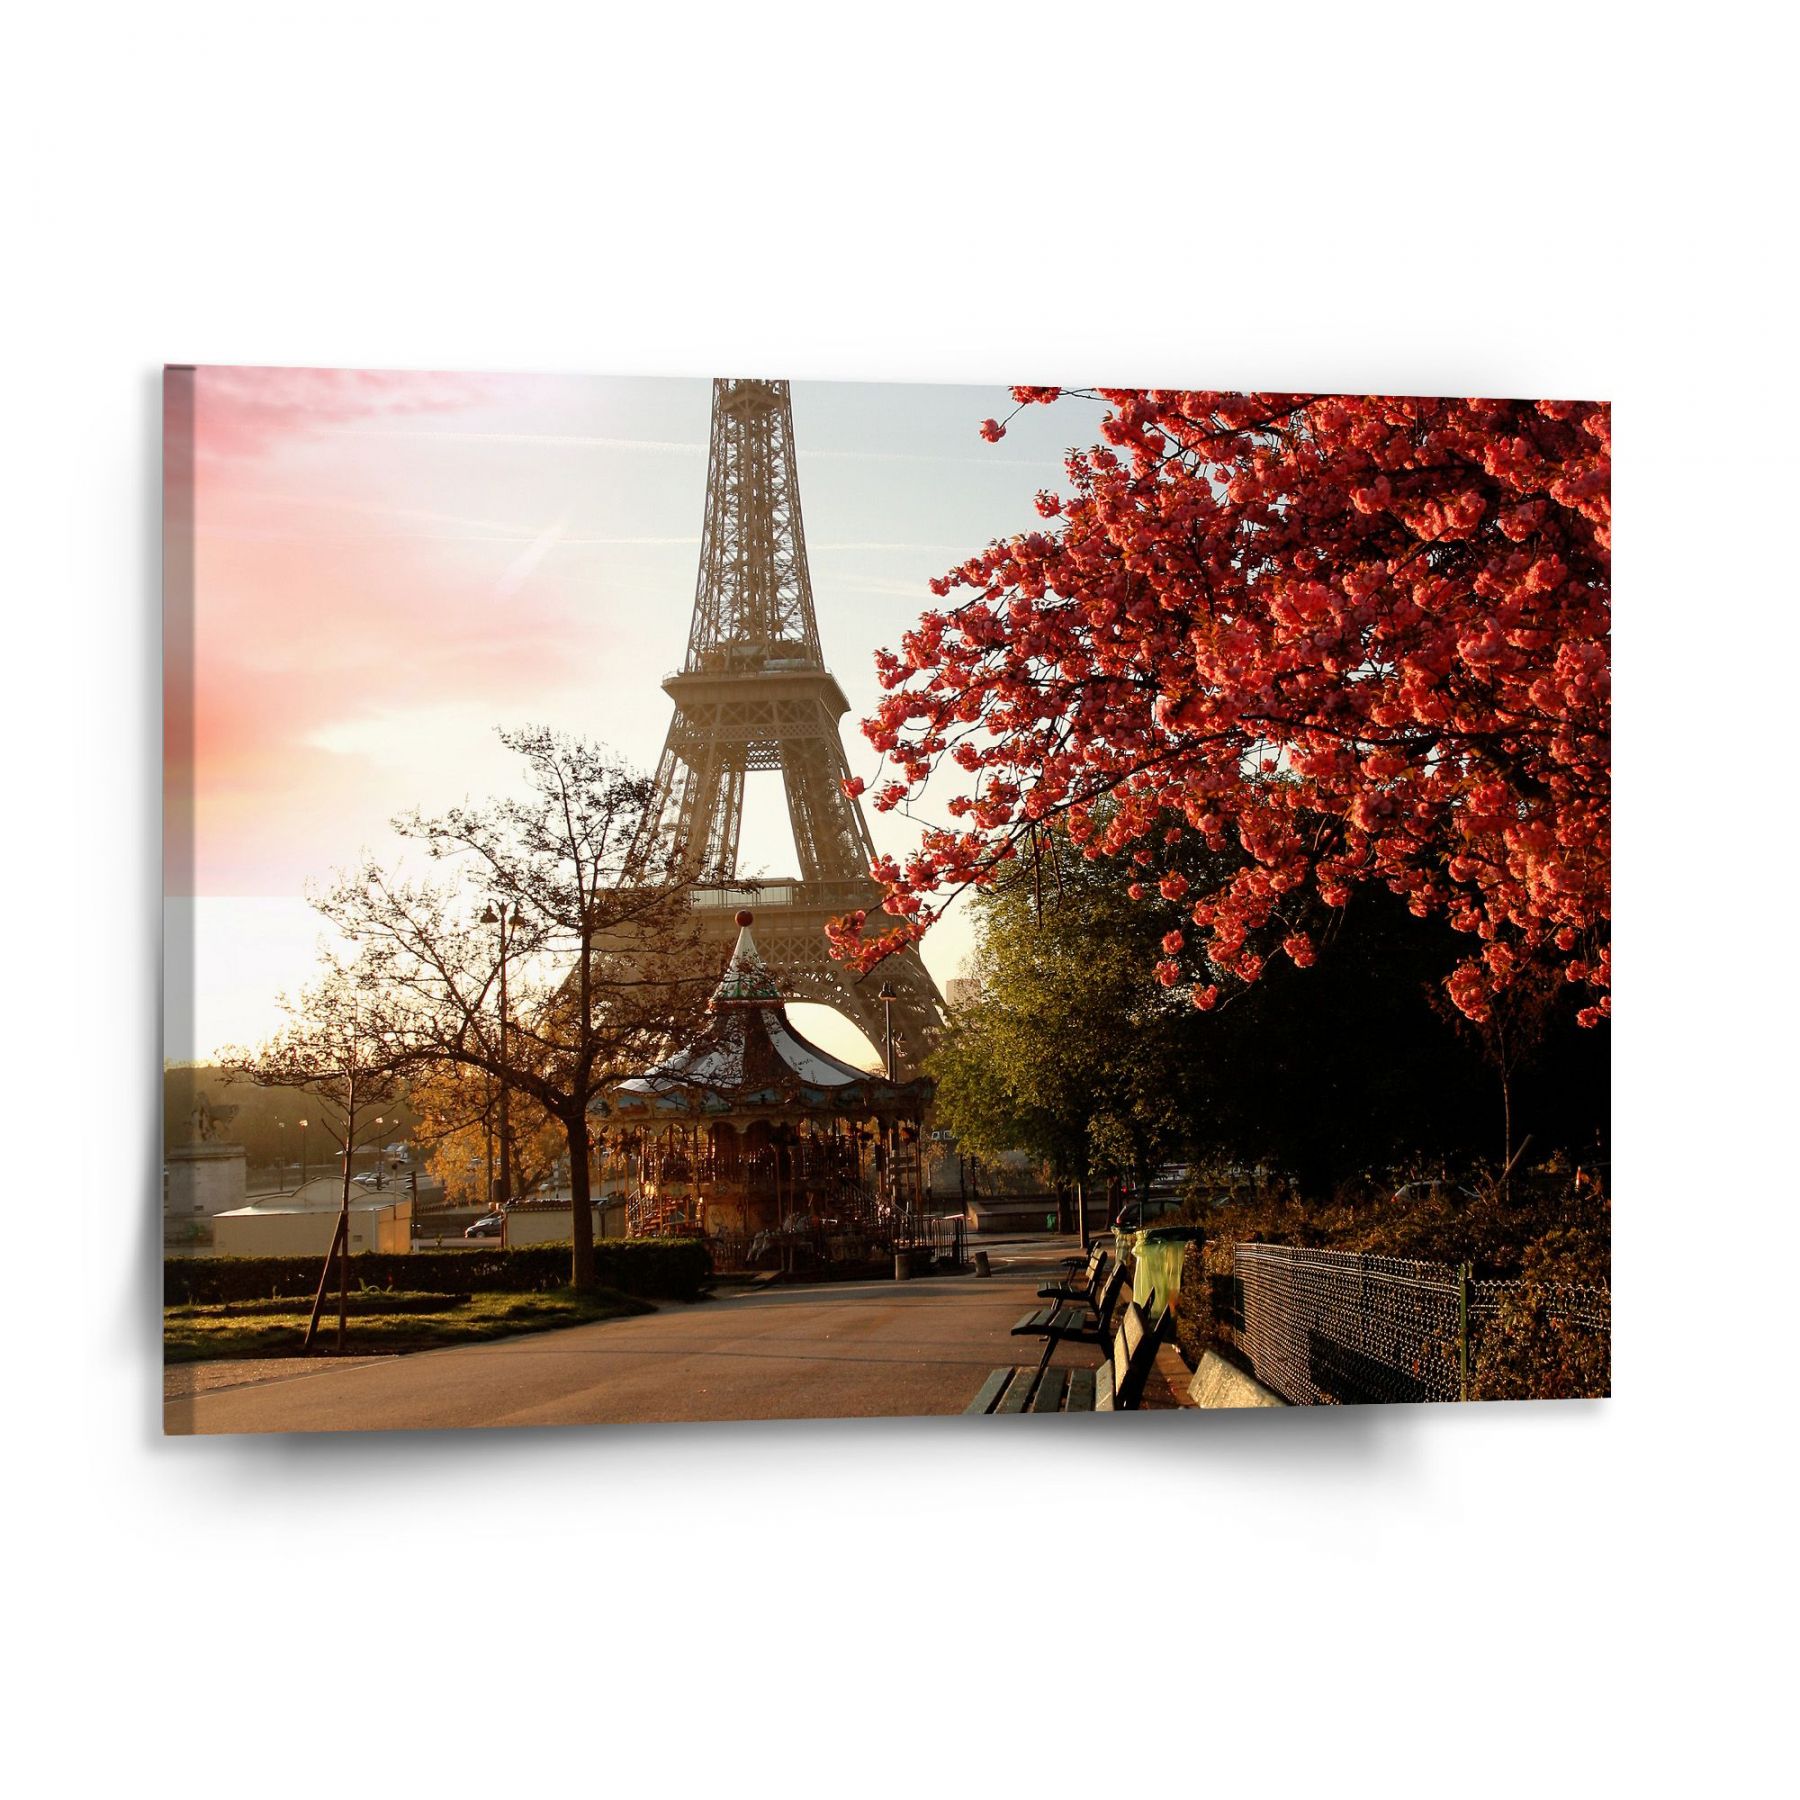 Obraz SABLIO - Eiffelova věž a červený strom 150x110 cm - E-shop Sablo s.r.o.